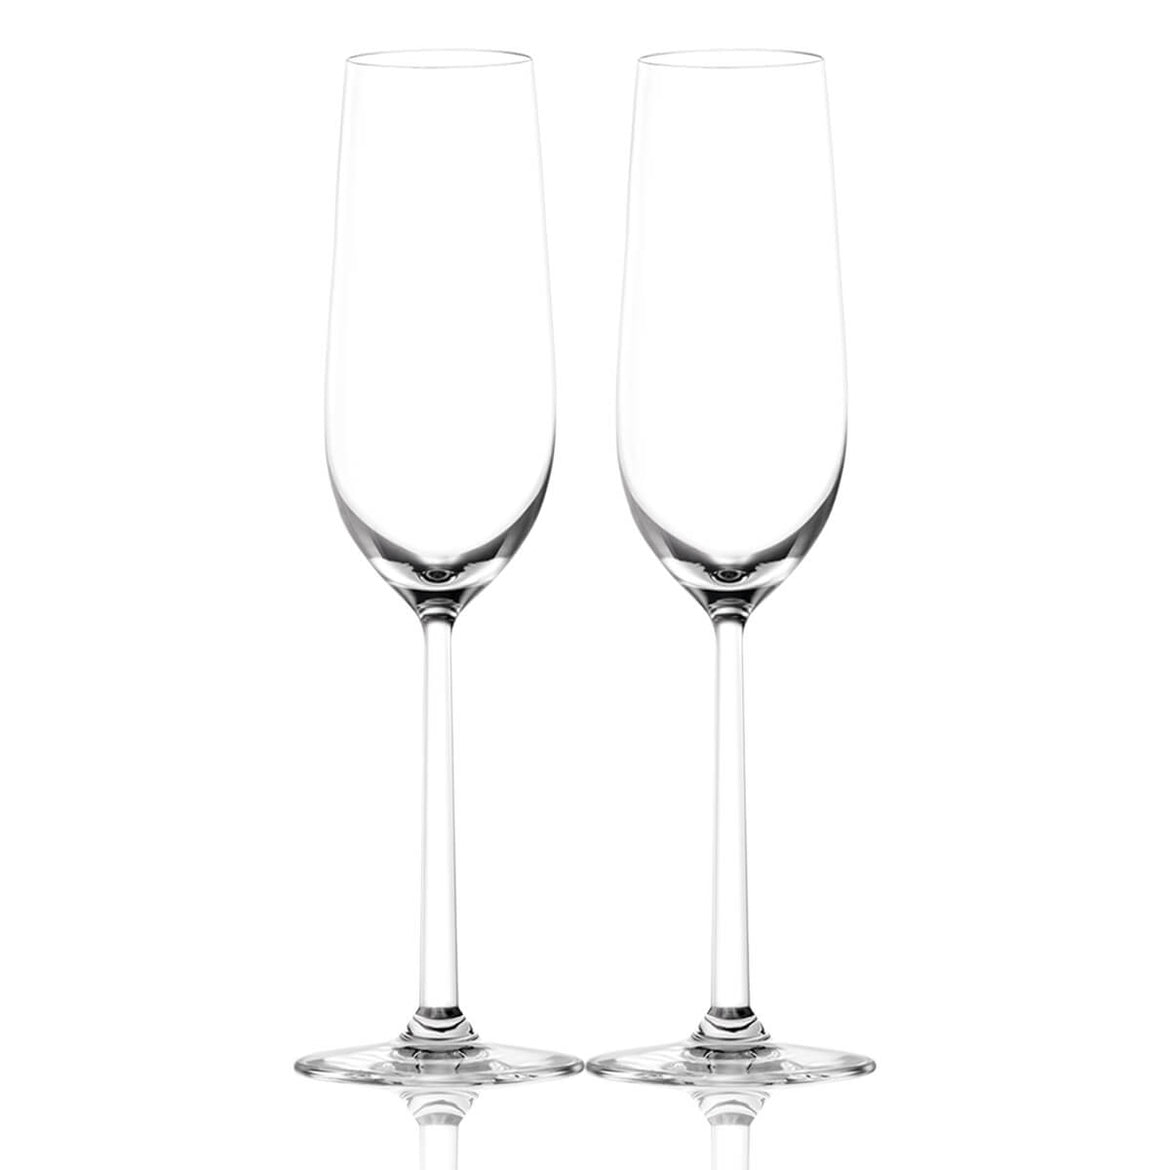 Krug Grande Cuvee 169 eme Edition Brut & Bottega Champagne Glasses Gift Set with Engraving |克魯格香檳第169版&Bottega香檳杯套裝(含名字人像雕刻） - Design Your Own Wine